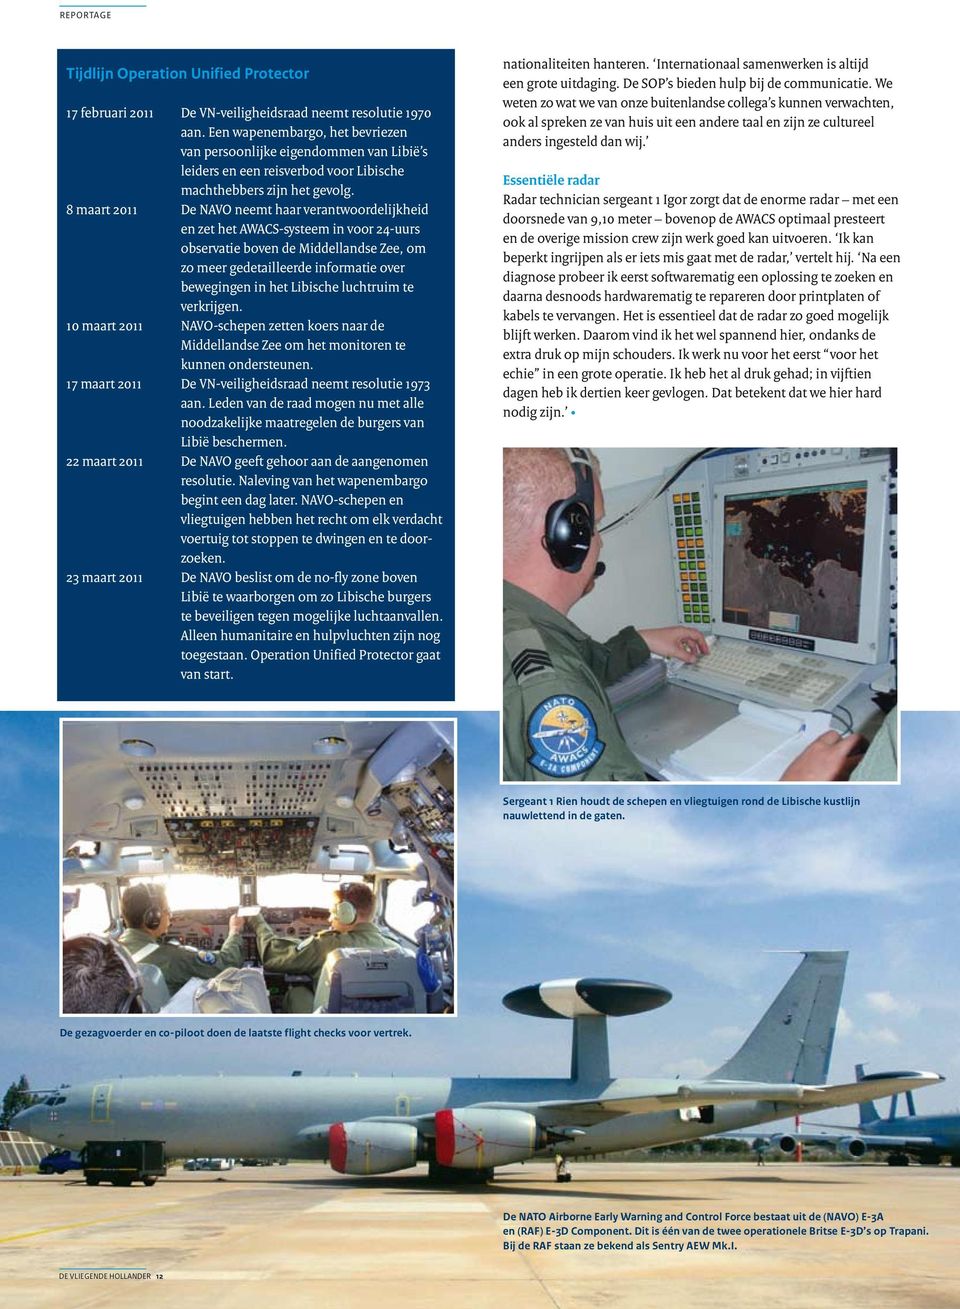 8 maart 2011 De NAVO neemt haar verantwoordelijkheid en zet het AWACS-systeem in voor 24-uurs observatie boven de Middellandse Zee, om zo meer gedetailleerde informatie over bewegingen in het